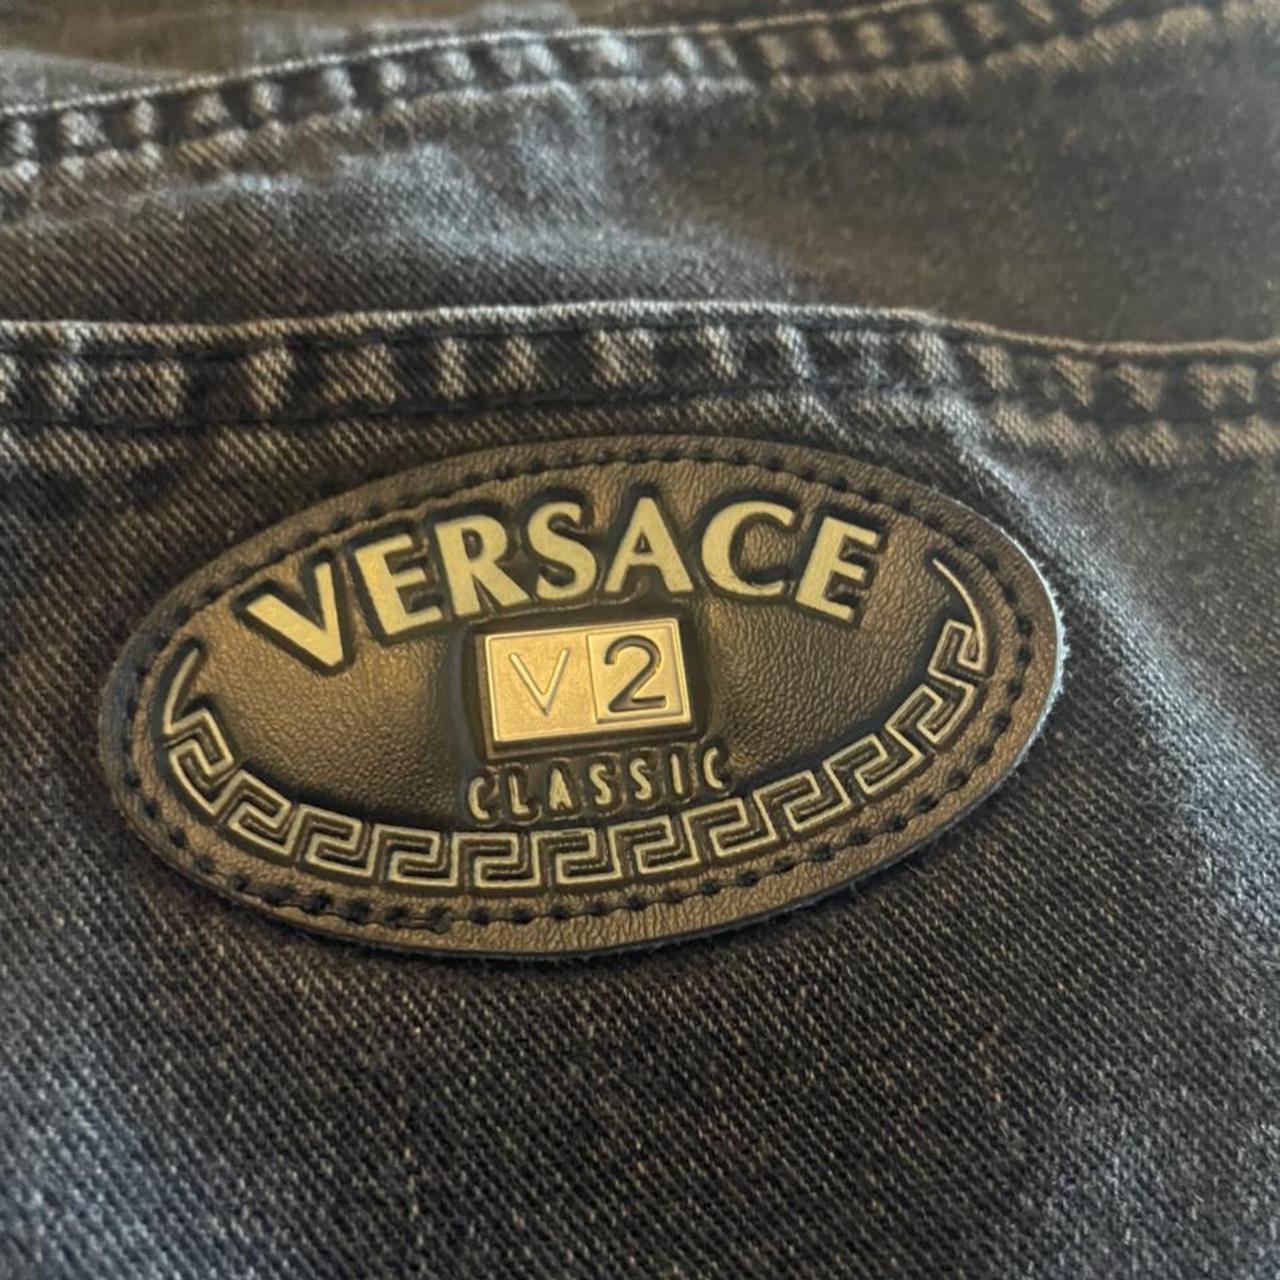 Versace Men's Black Jeans | Depop